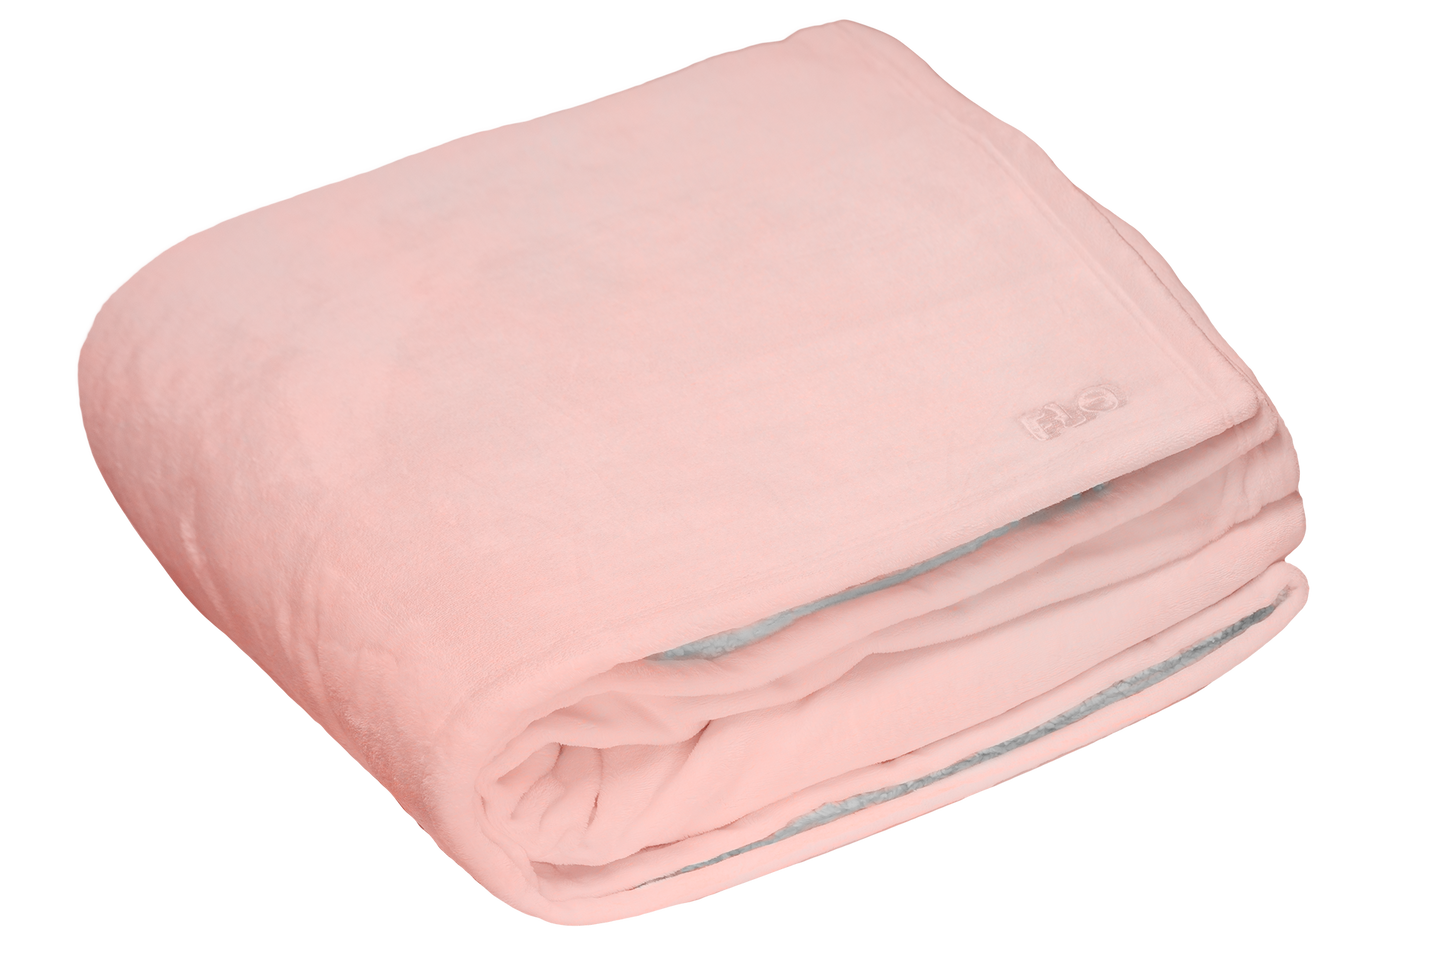 Flo Blanket